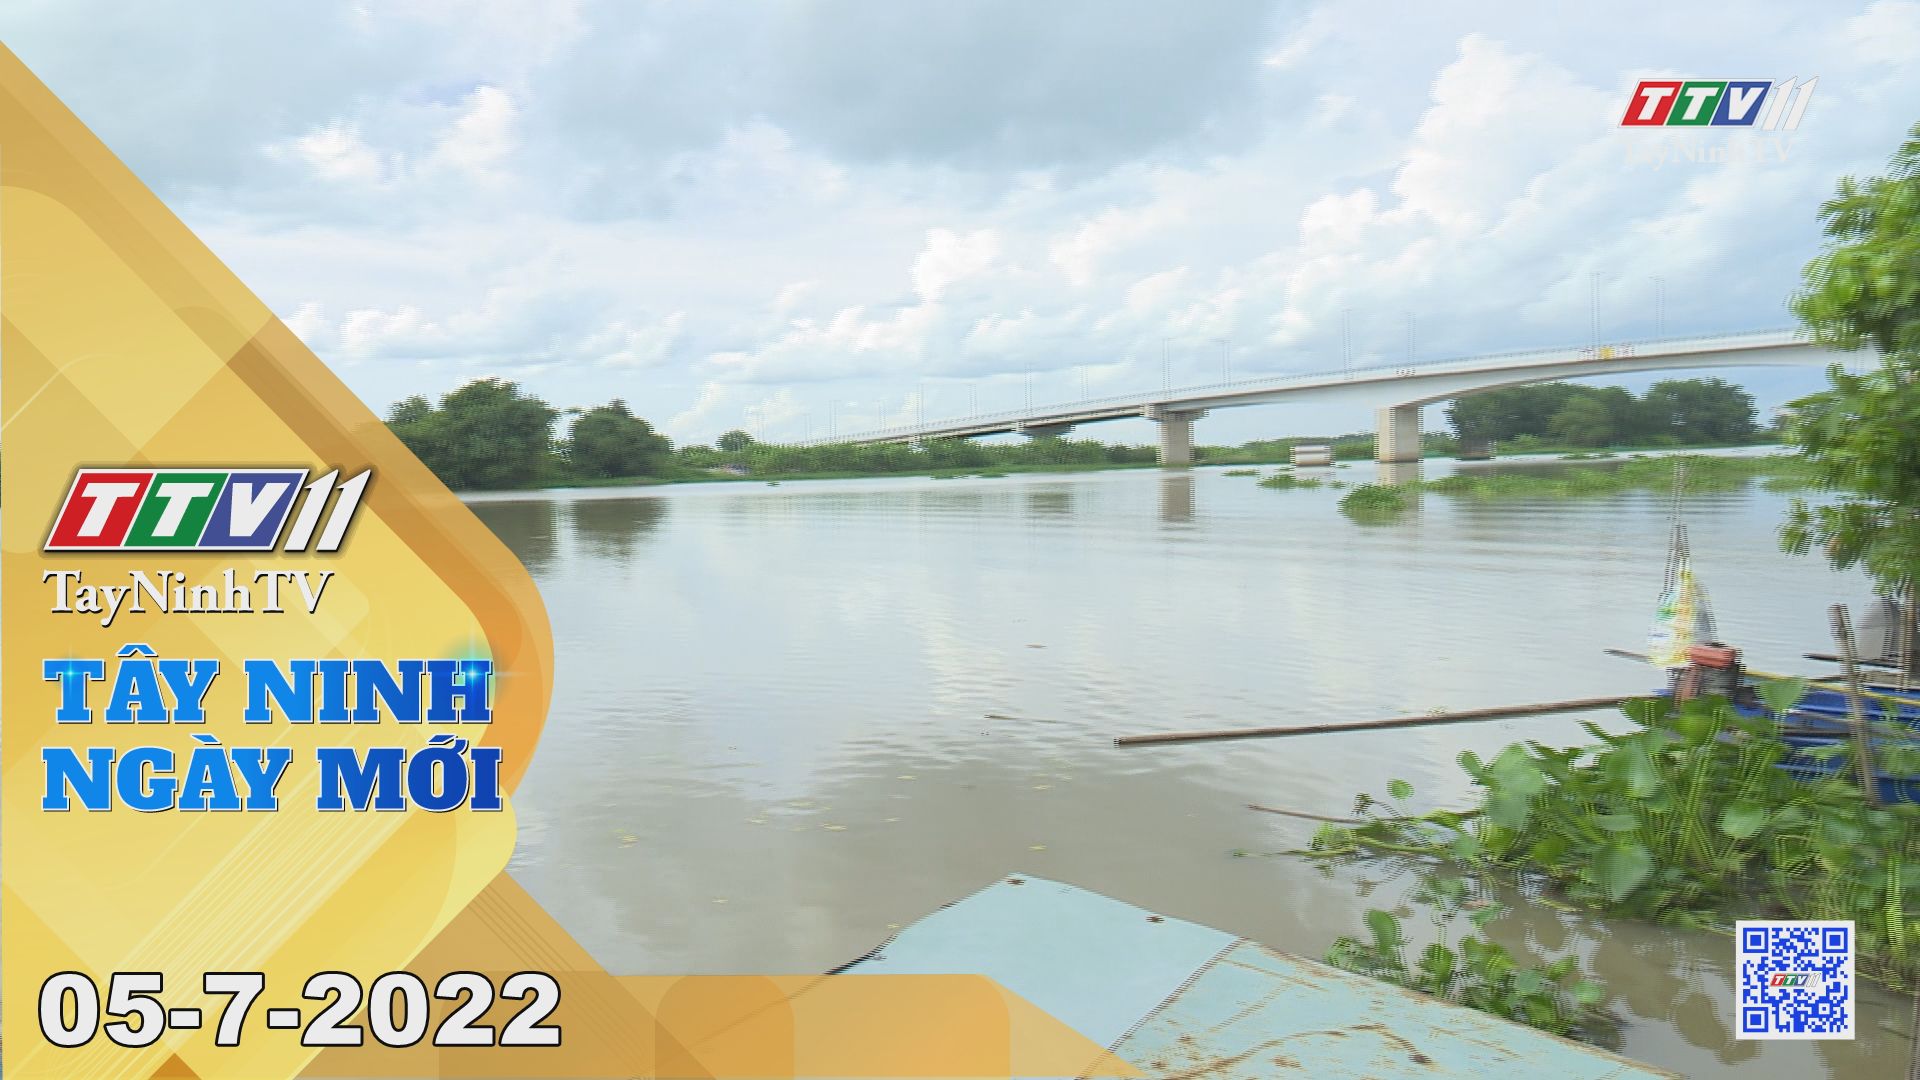 Tây Ninh ngày mới 05-7-2022 | Tin tức hôm nay | TayNinhTV